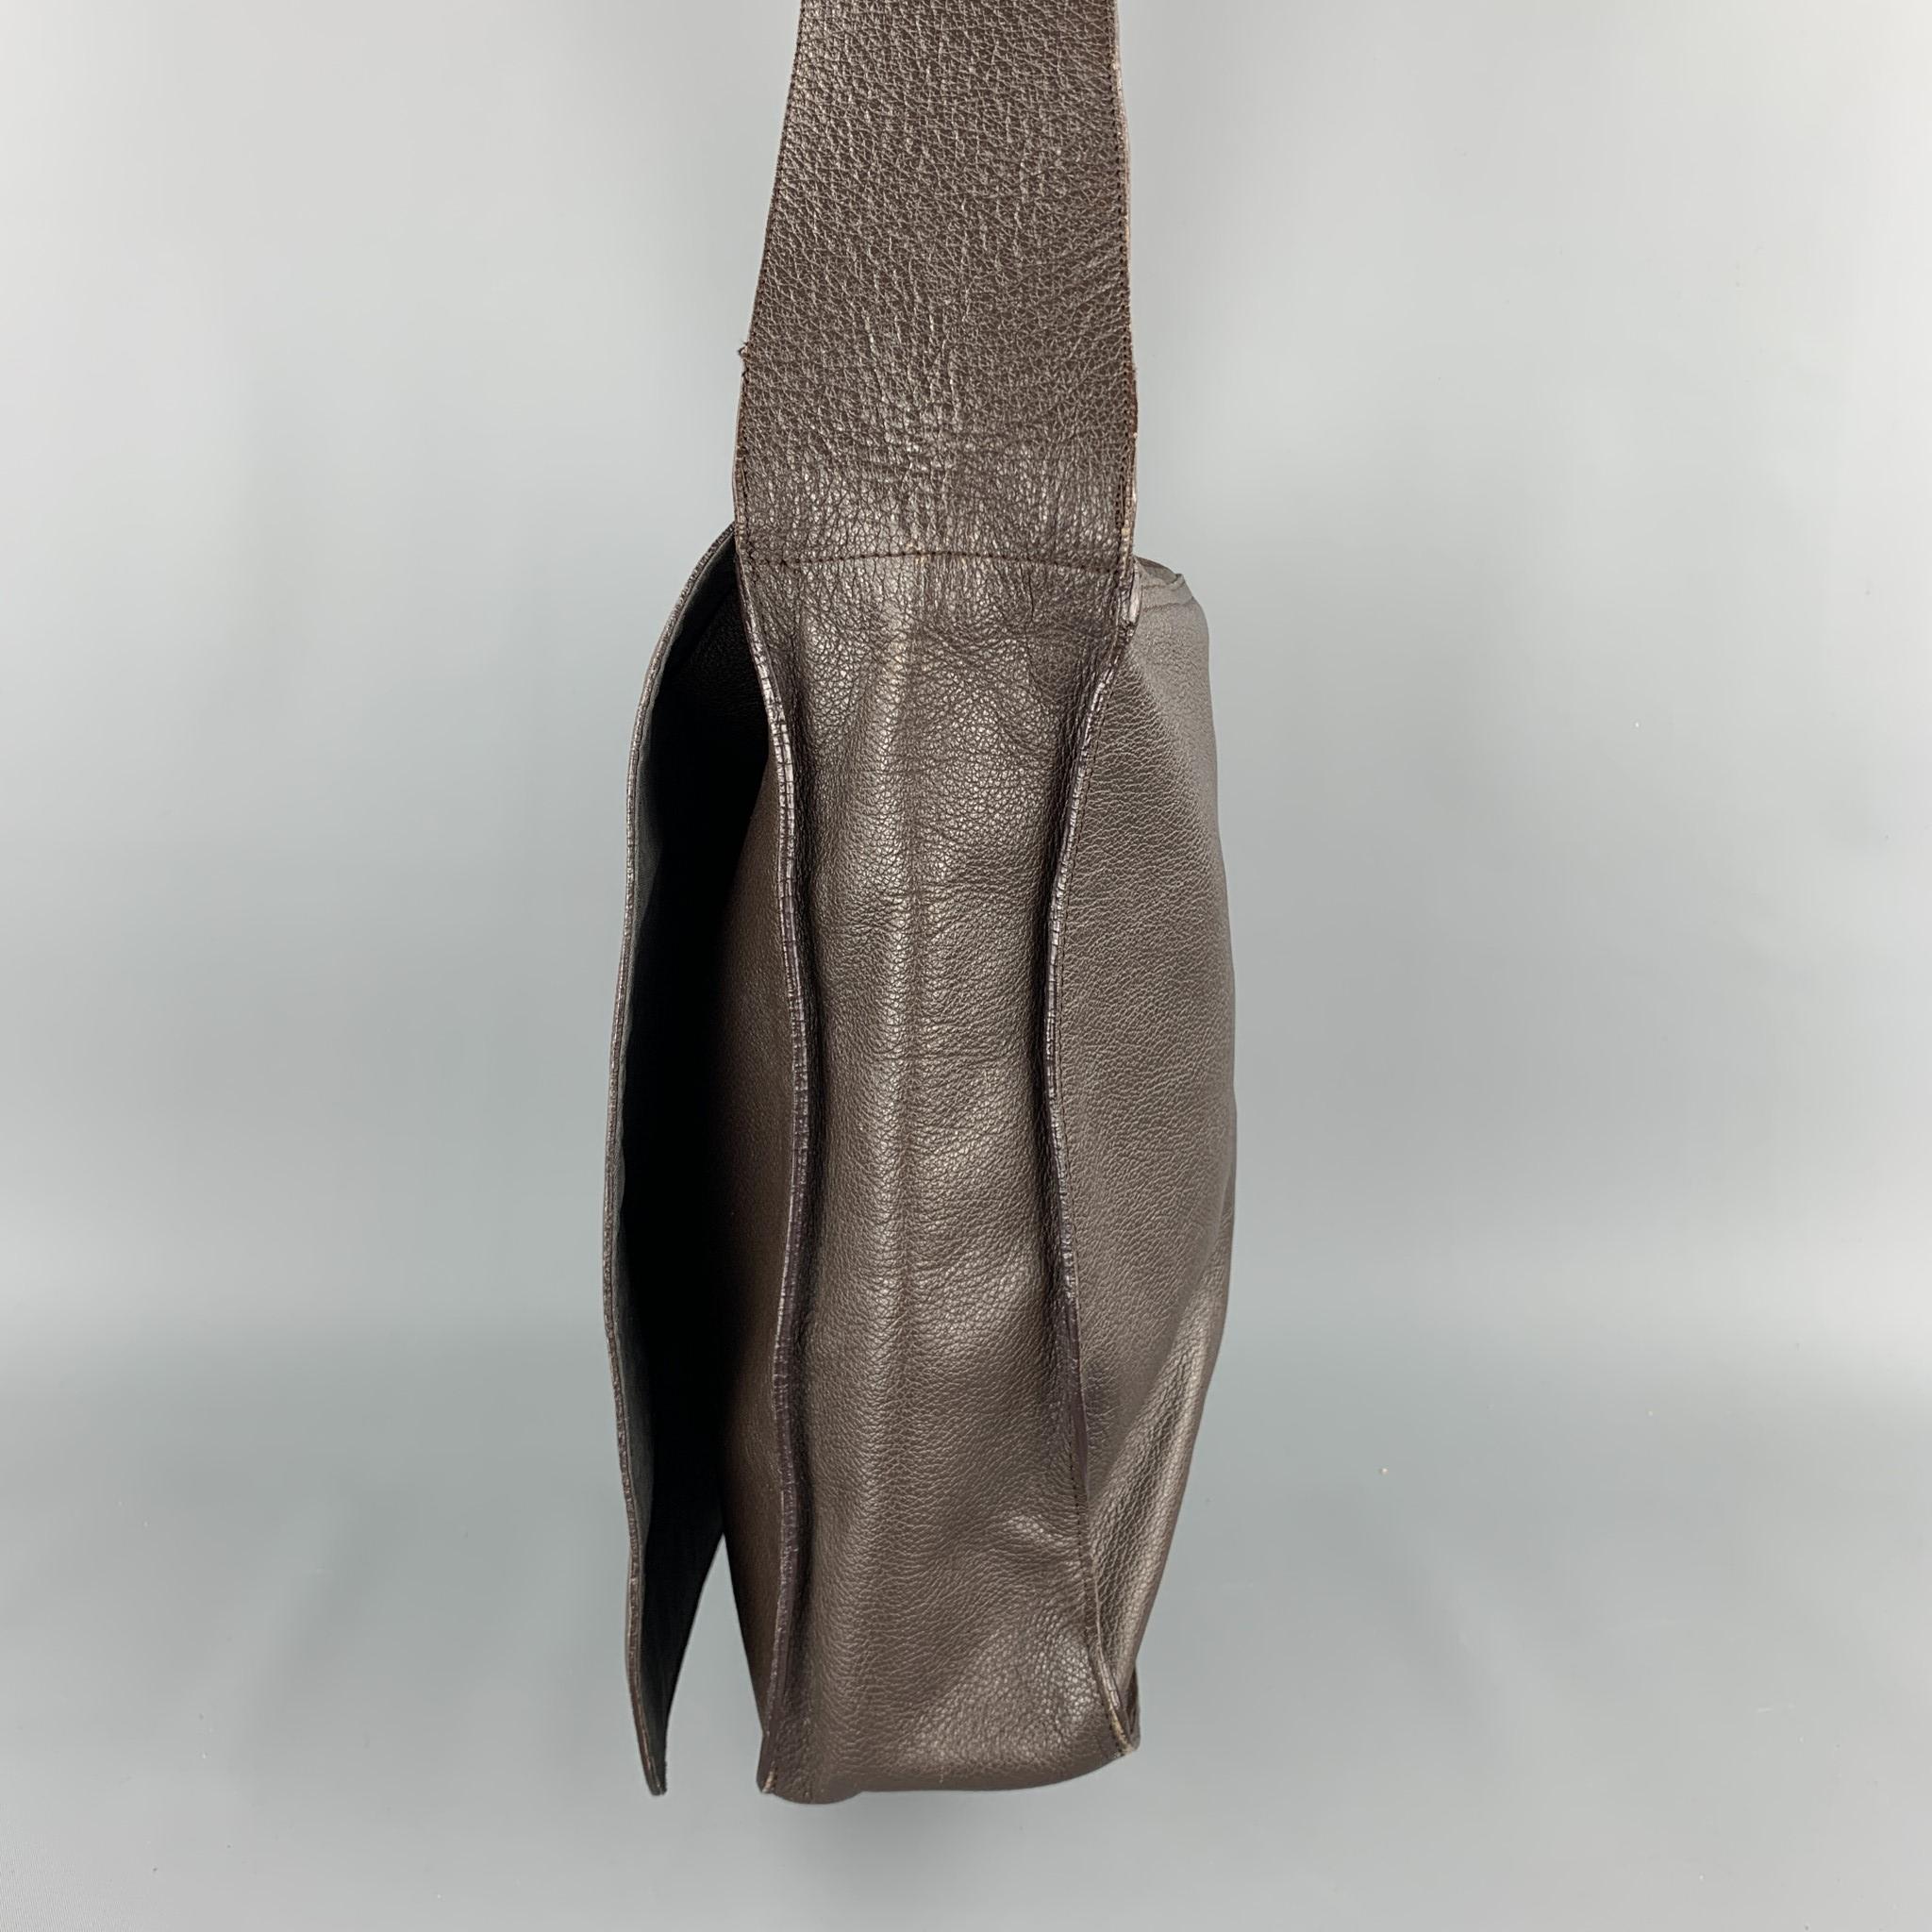 jean paul gaultier leather bag